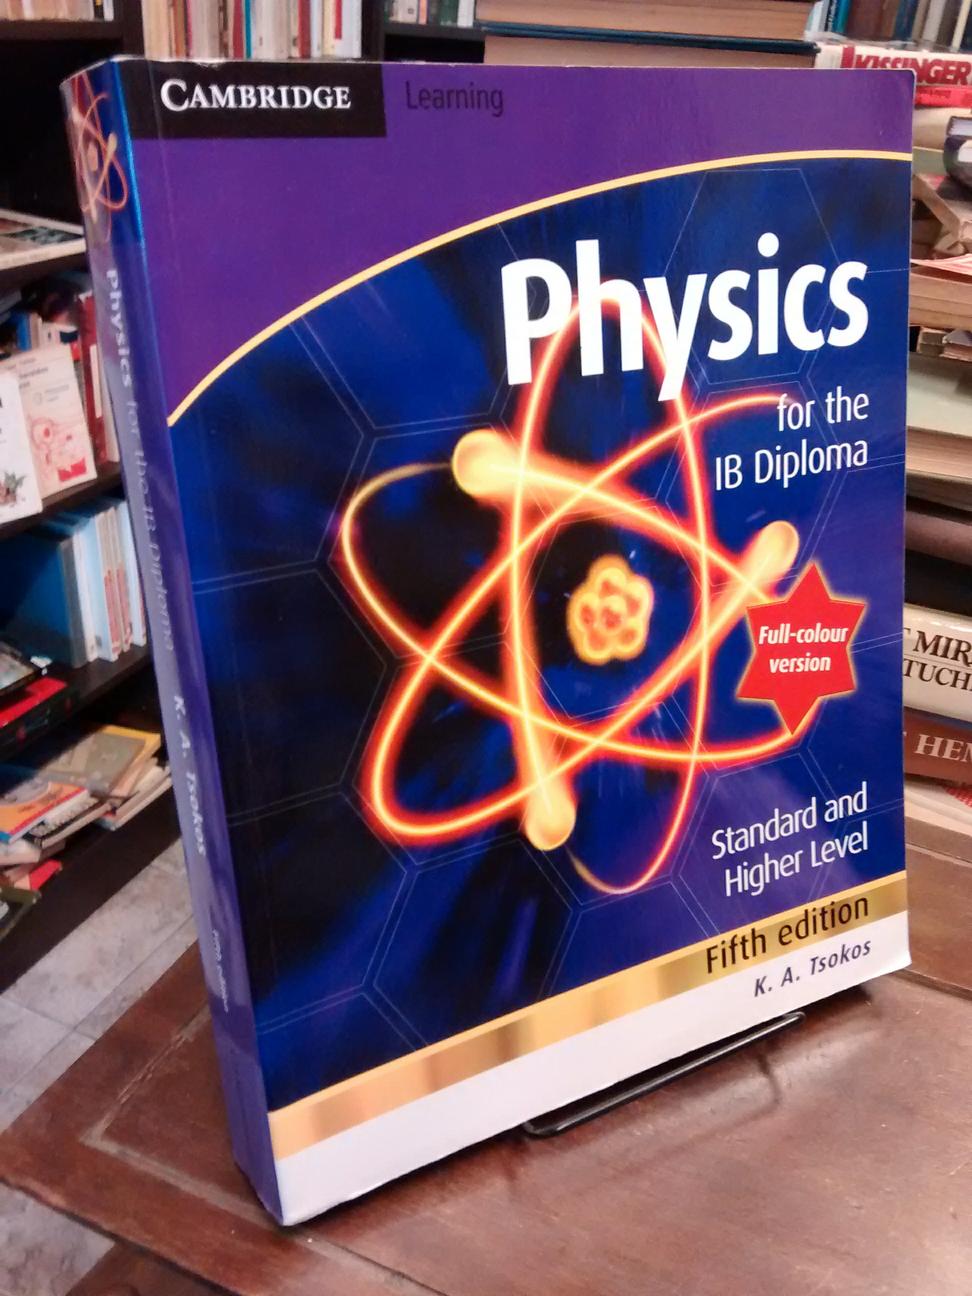 Physics for the IB Diploma (5th ed.) - K. A. Tsokos